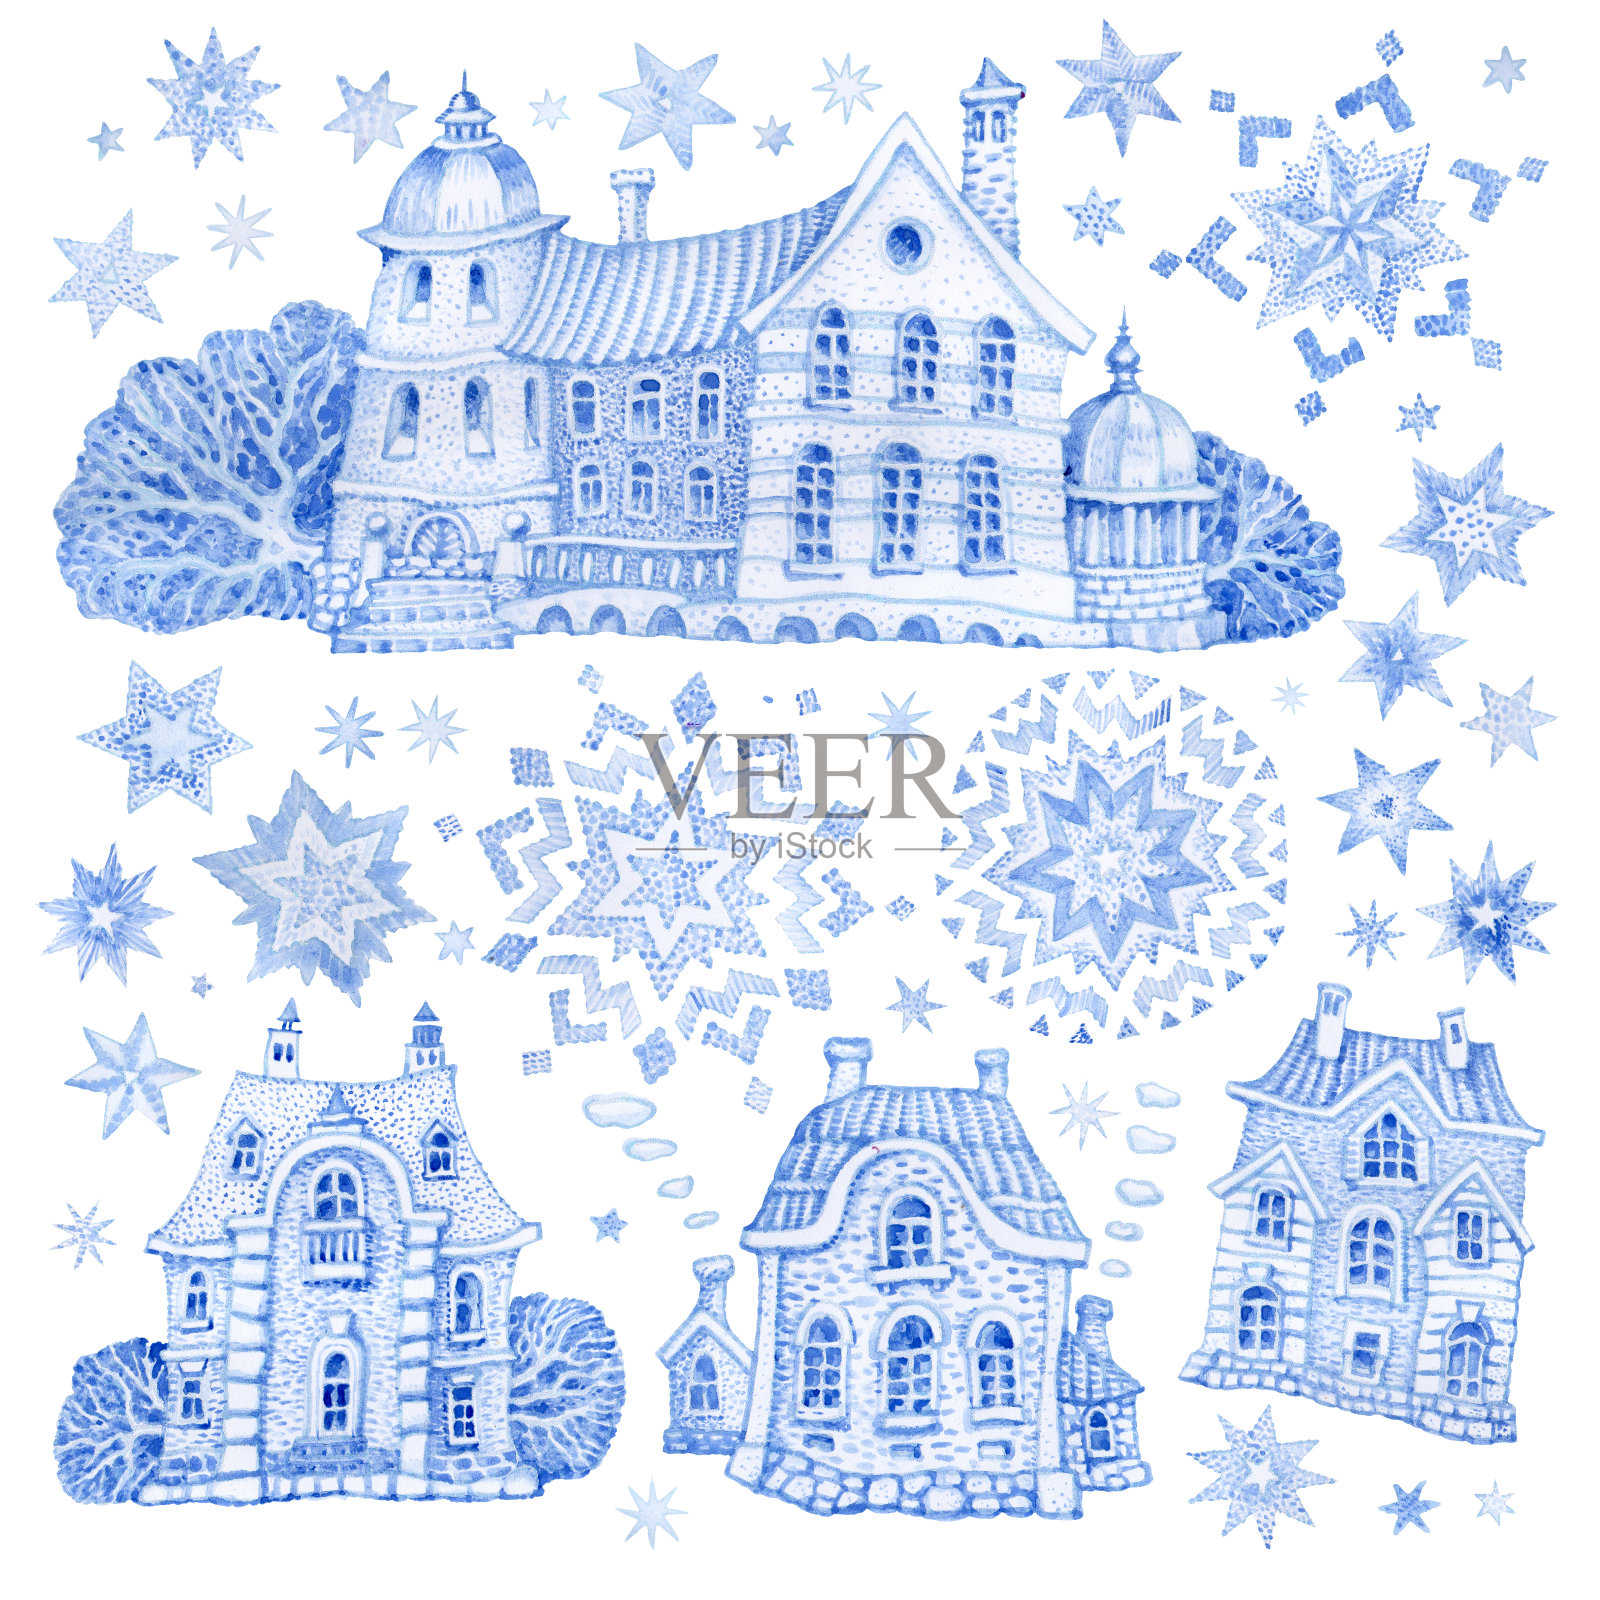 一套幻想的建筑物与圣诞星和雪花。手绘的蓝色水彩童话老城房子孤立在白色的背景。冬季景观t恤印花。、问候卡或请帖插画图片素材